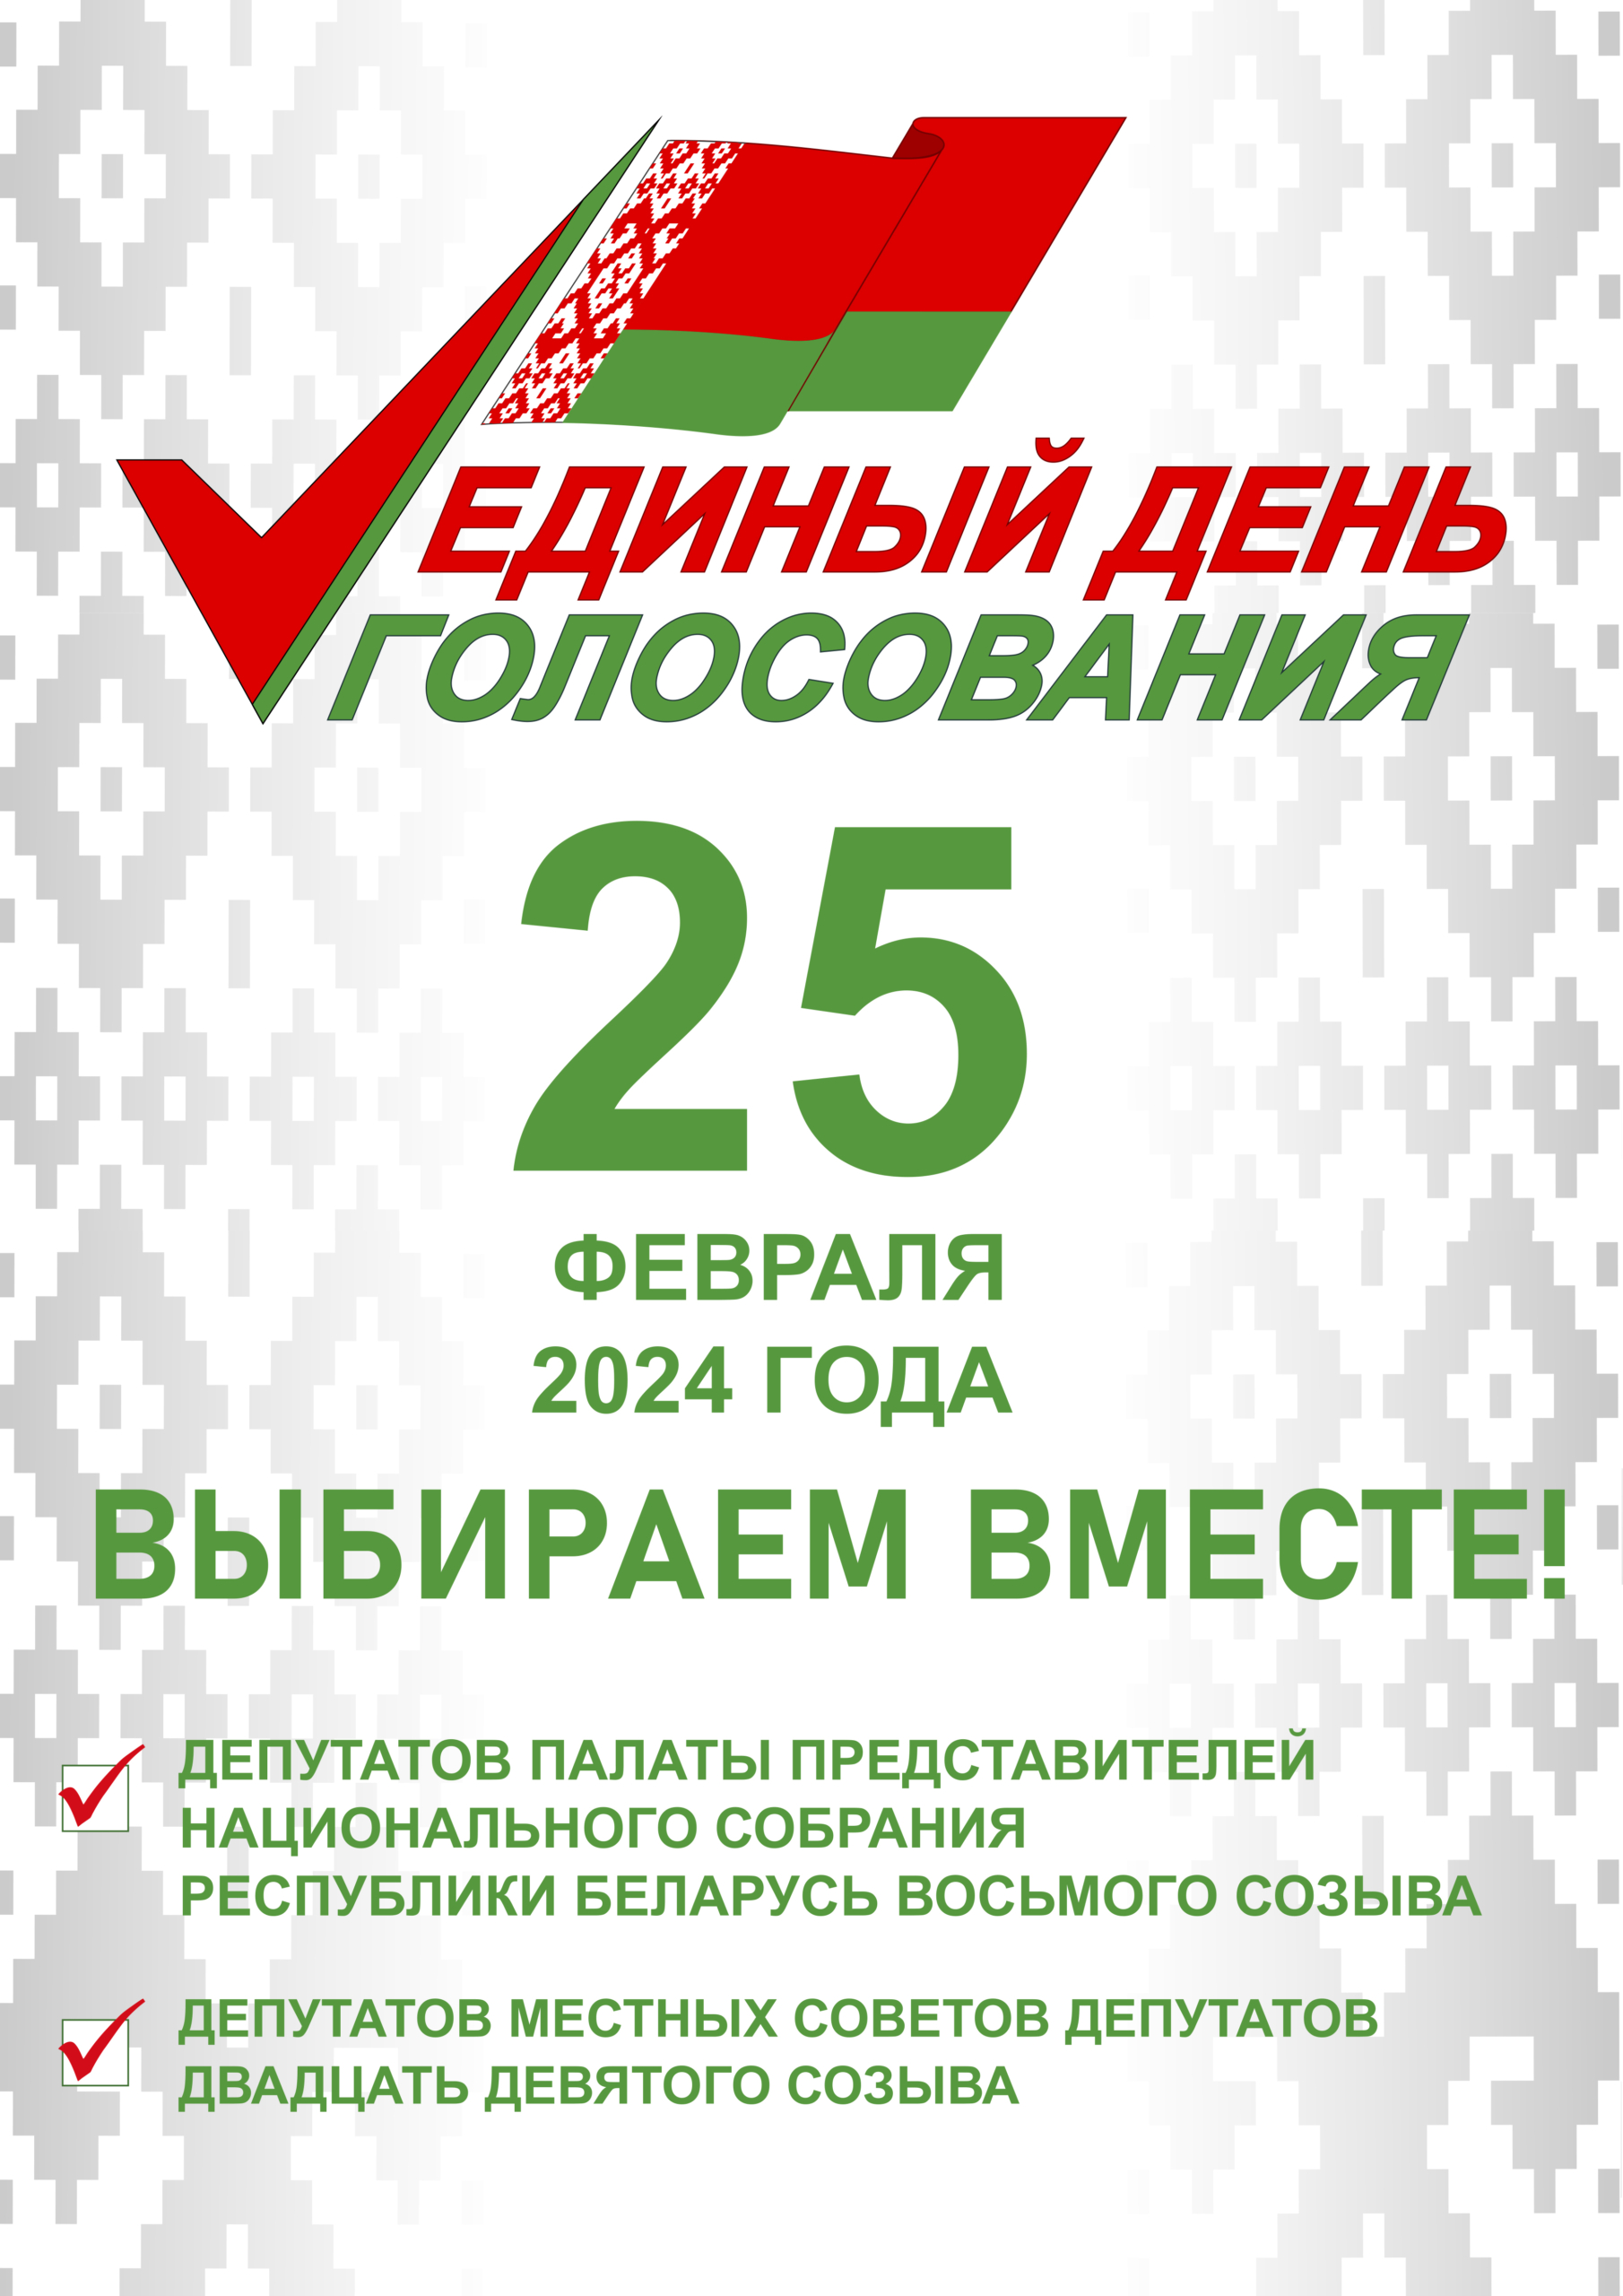 Выборы депутатов в единый день голосования 25 февраля 2024 года